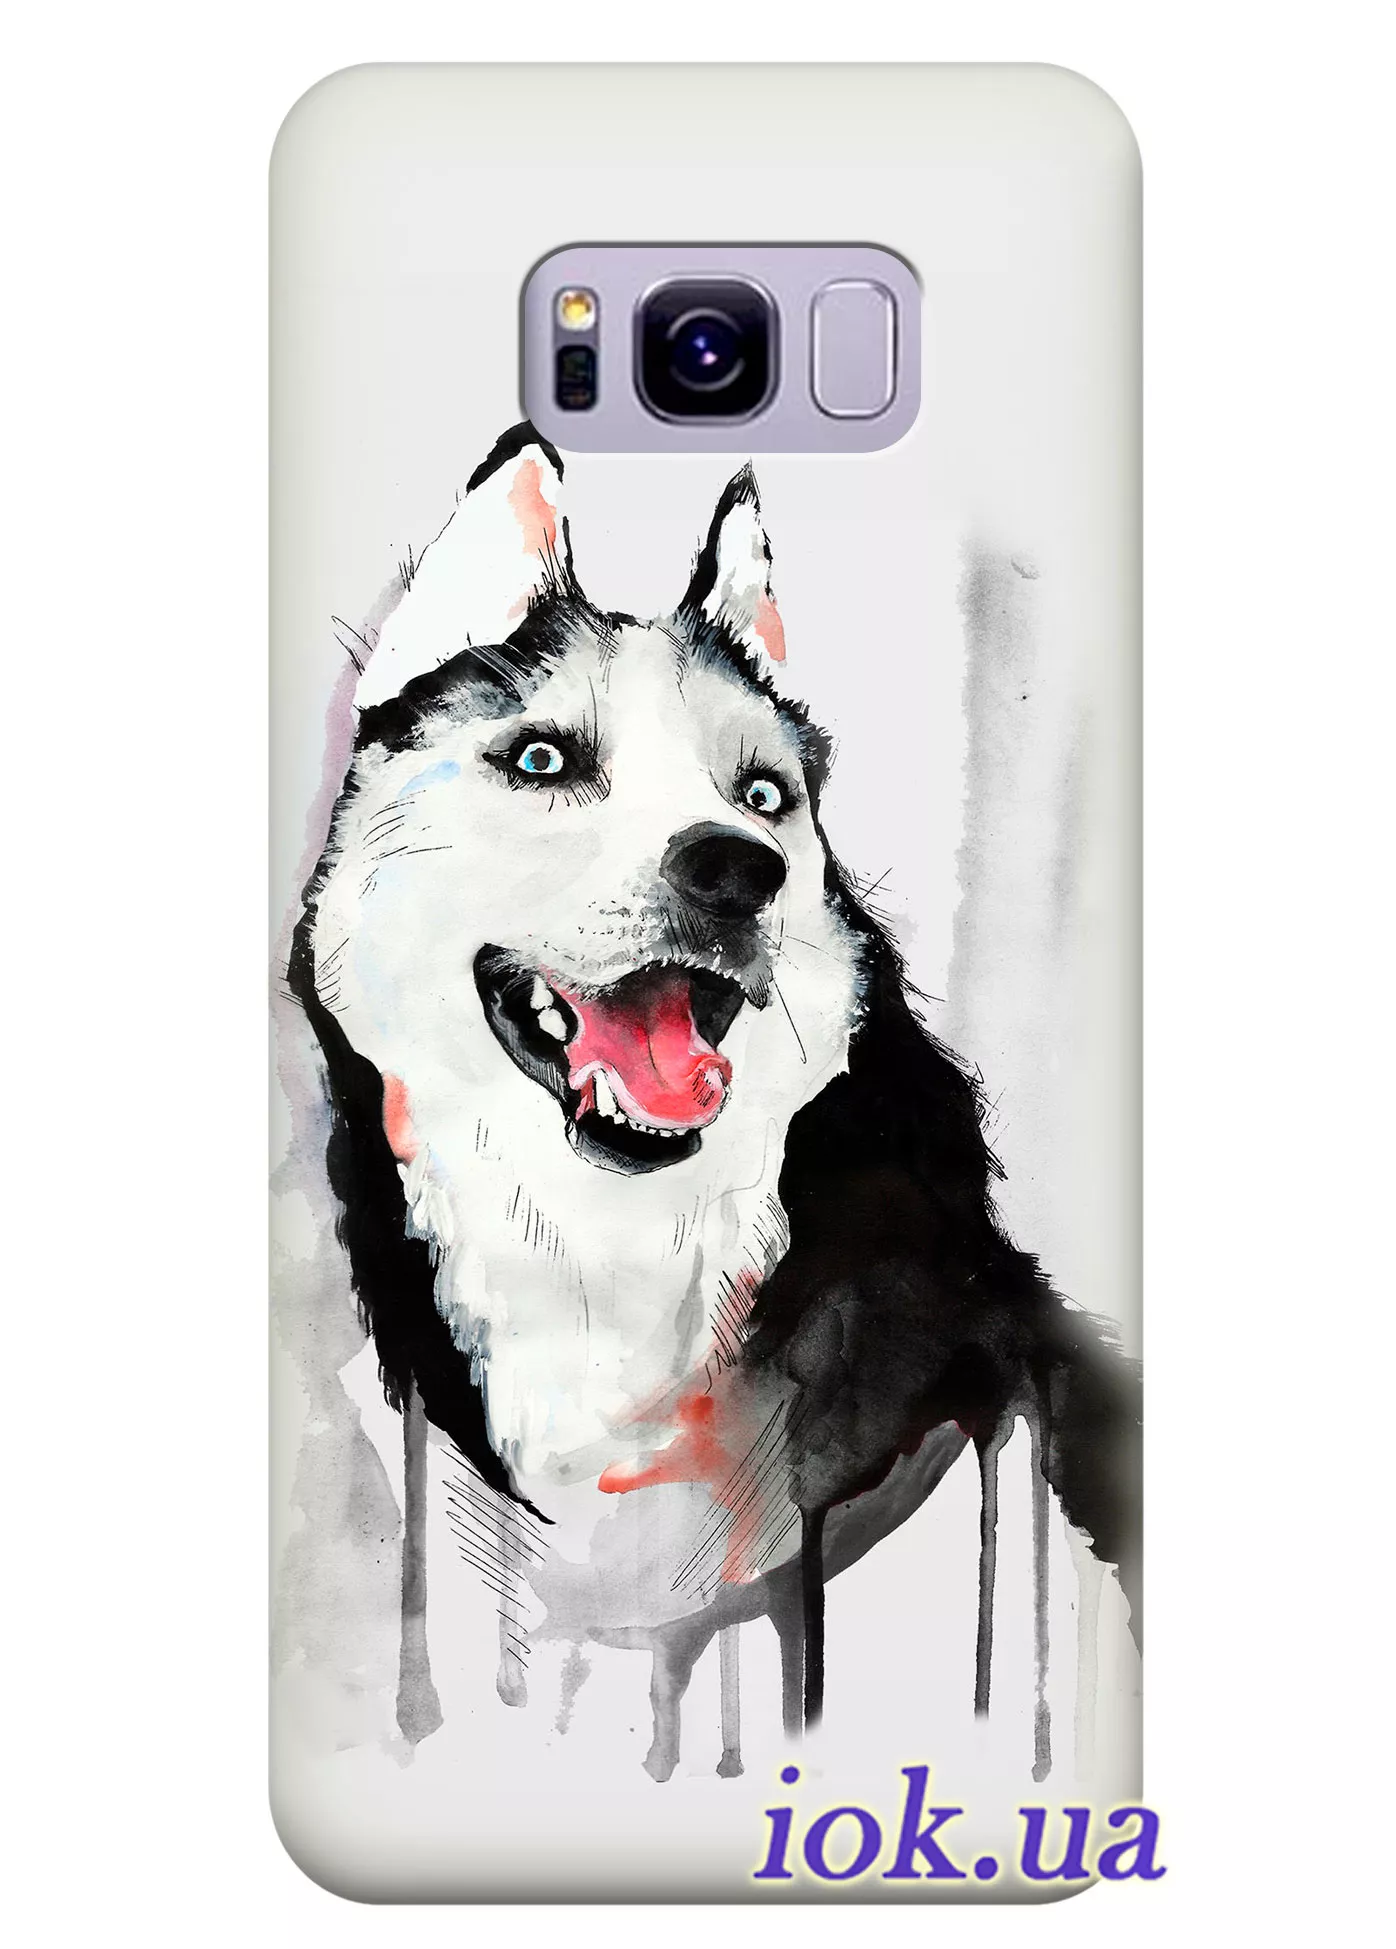 Чехол для Galaxy S8 Active - Забавный пёс